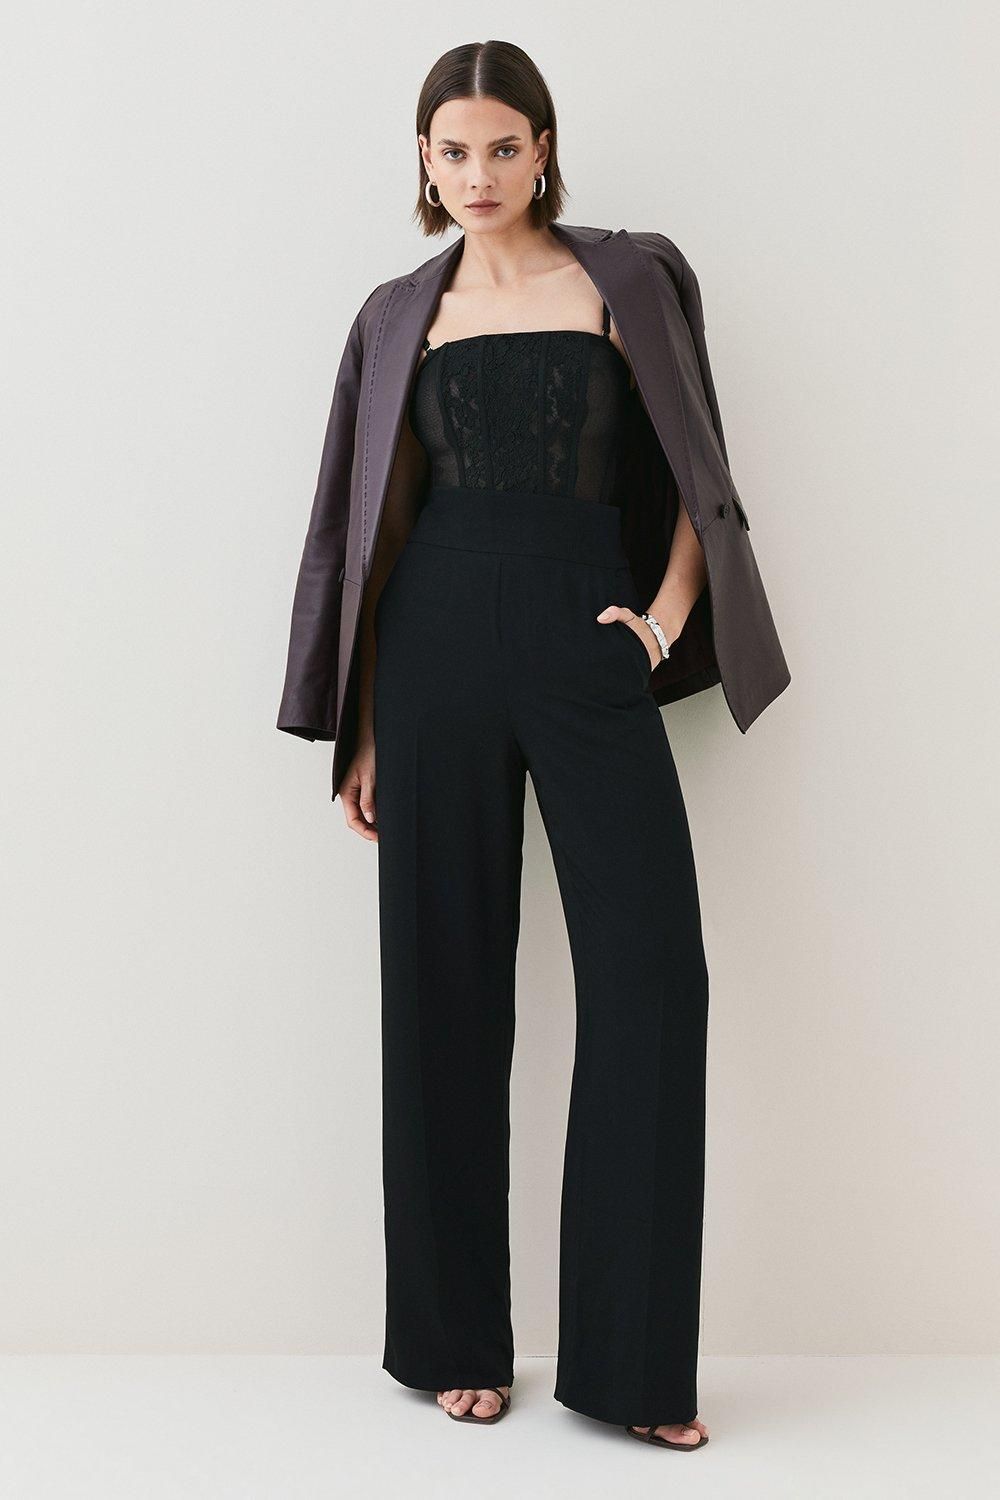 Soft Tailored High Waist Trouser | Karen Millen UK & IE